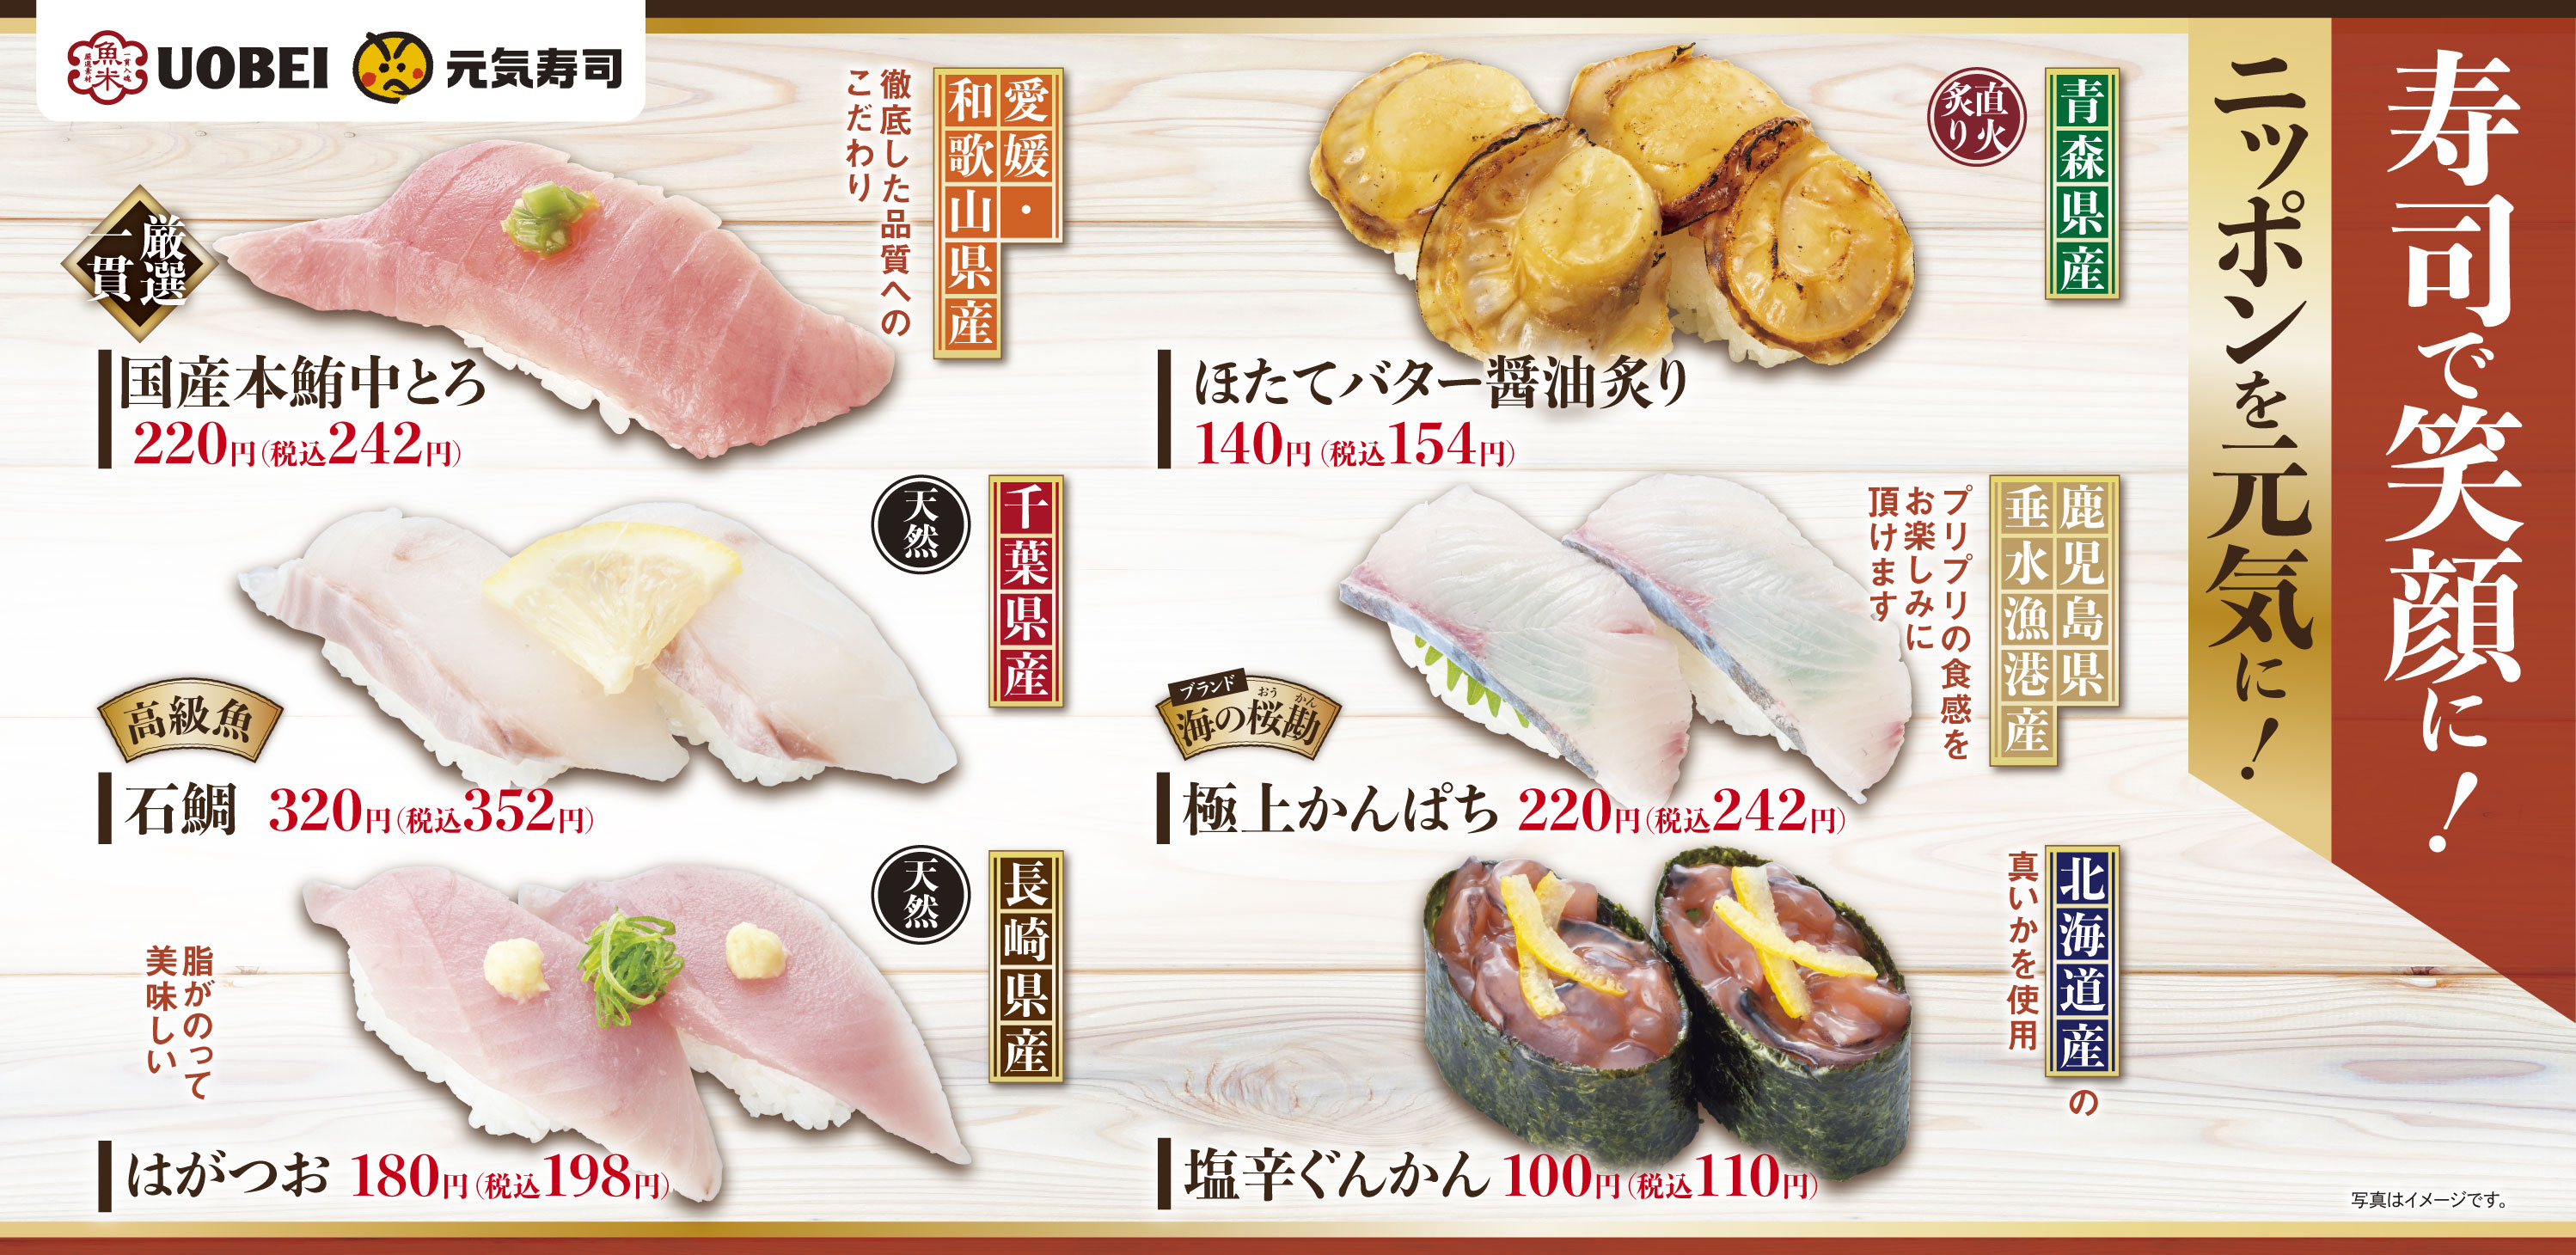 魚べい 元気寿司から全国の美味しいネタをお届け 寿司で笑顔に ニッポンを元気に 開催中 元気寿司株式会社のプレスリリース